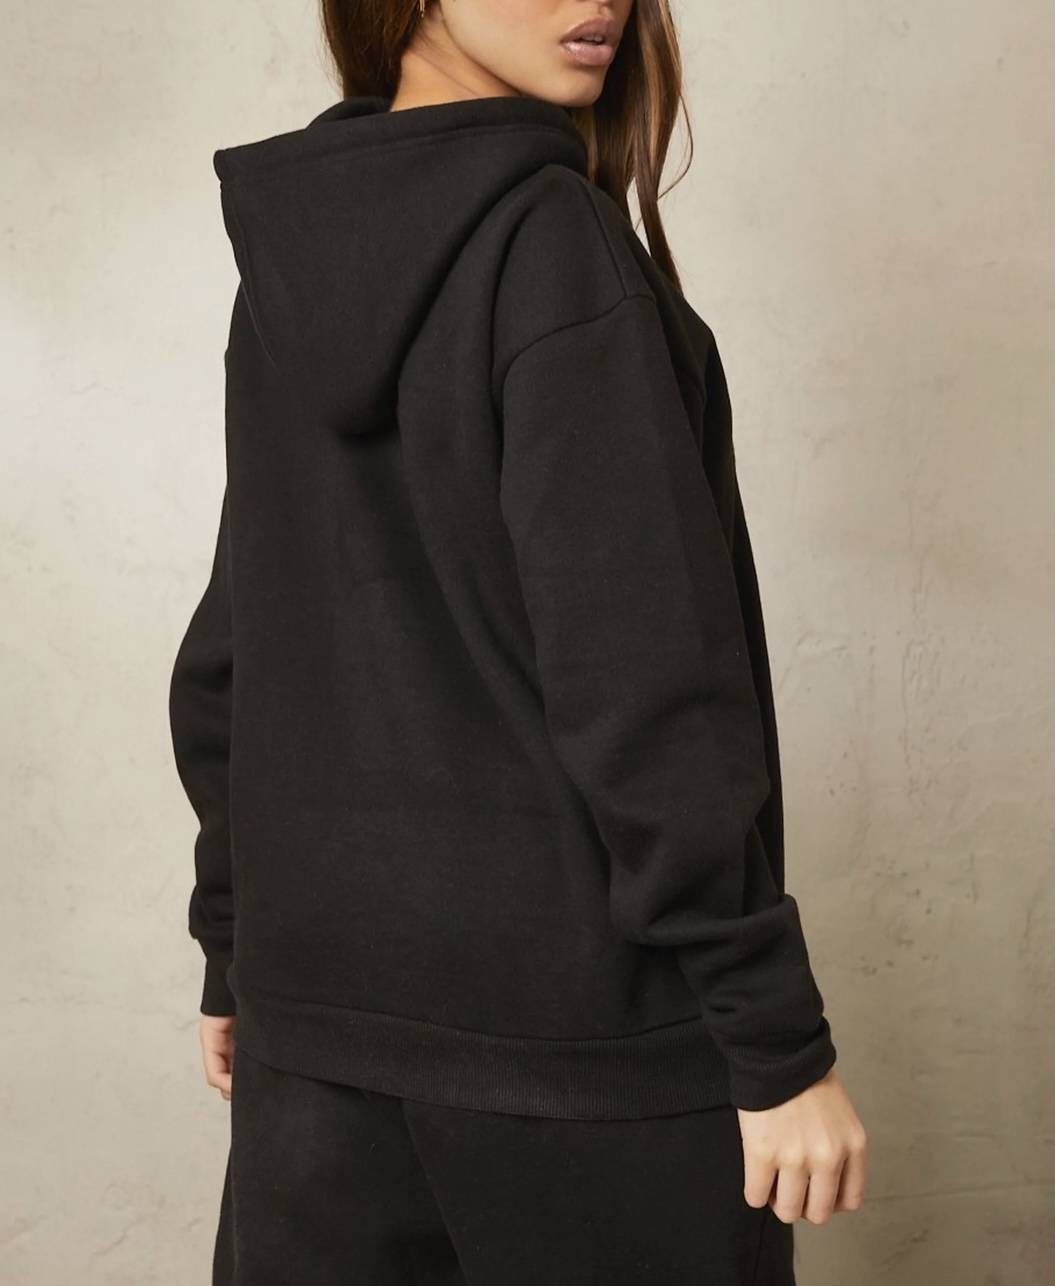 Aafrose plain black hoodie